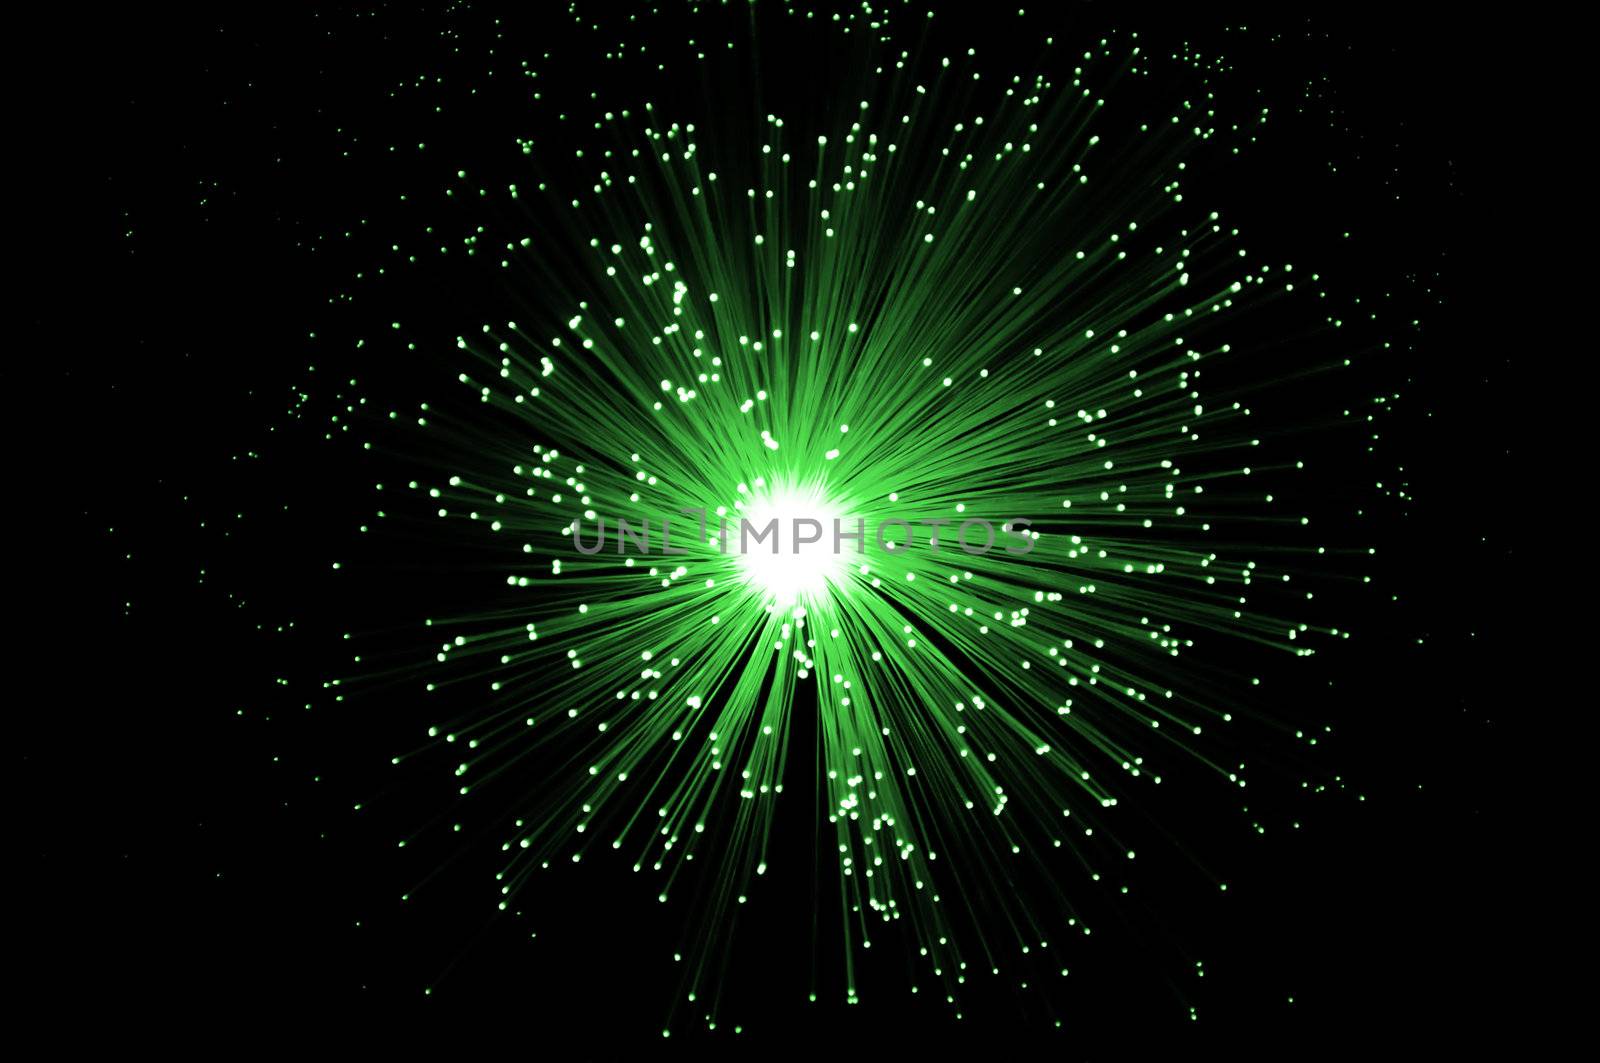 Overhead of illuminated green fiber optic light strands against black background